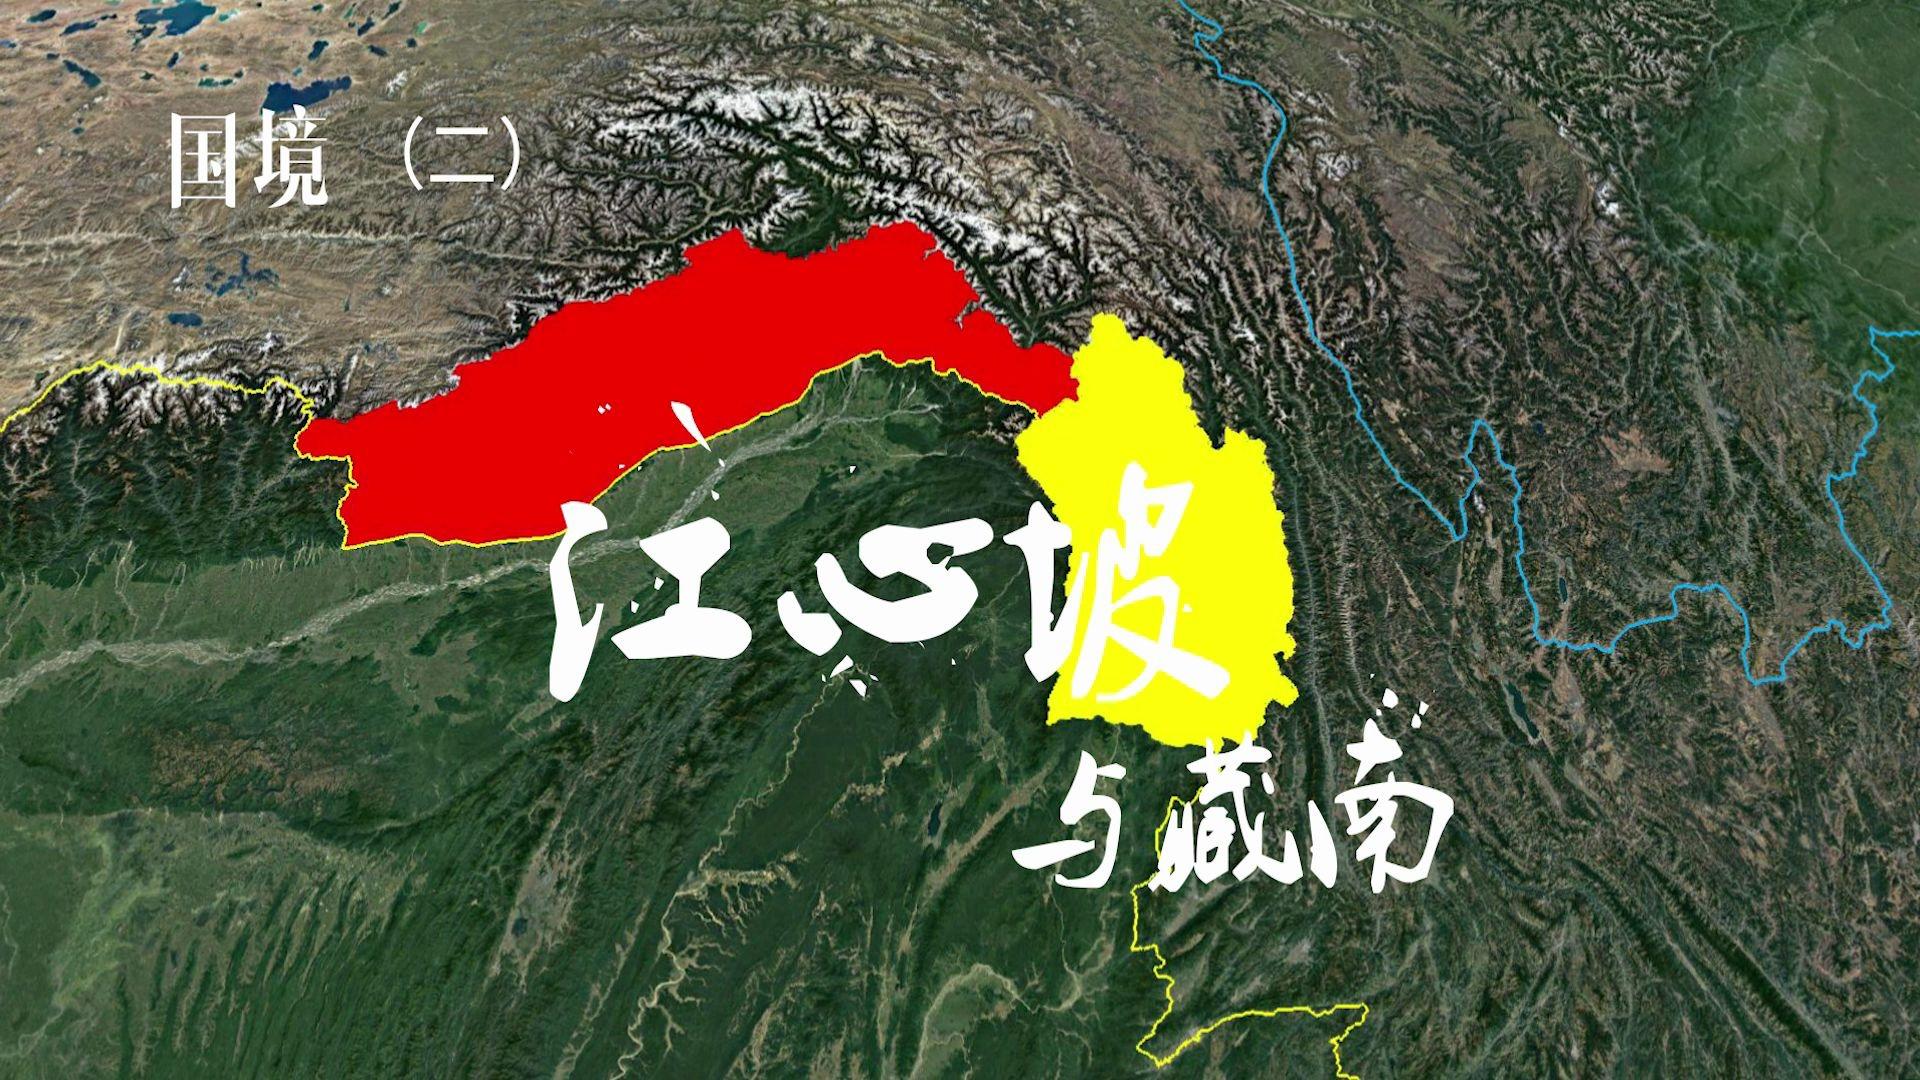 江心坡地理位置太好了如果江心坡还在藏南也不会如此被动